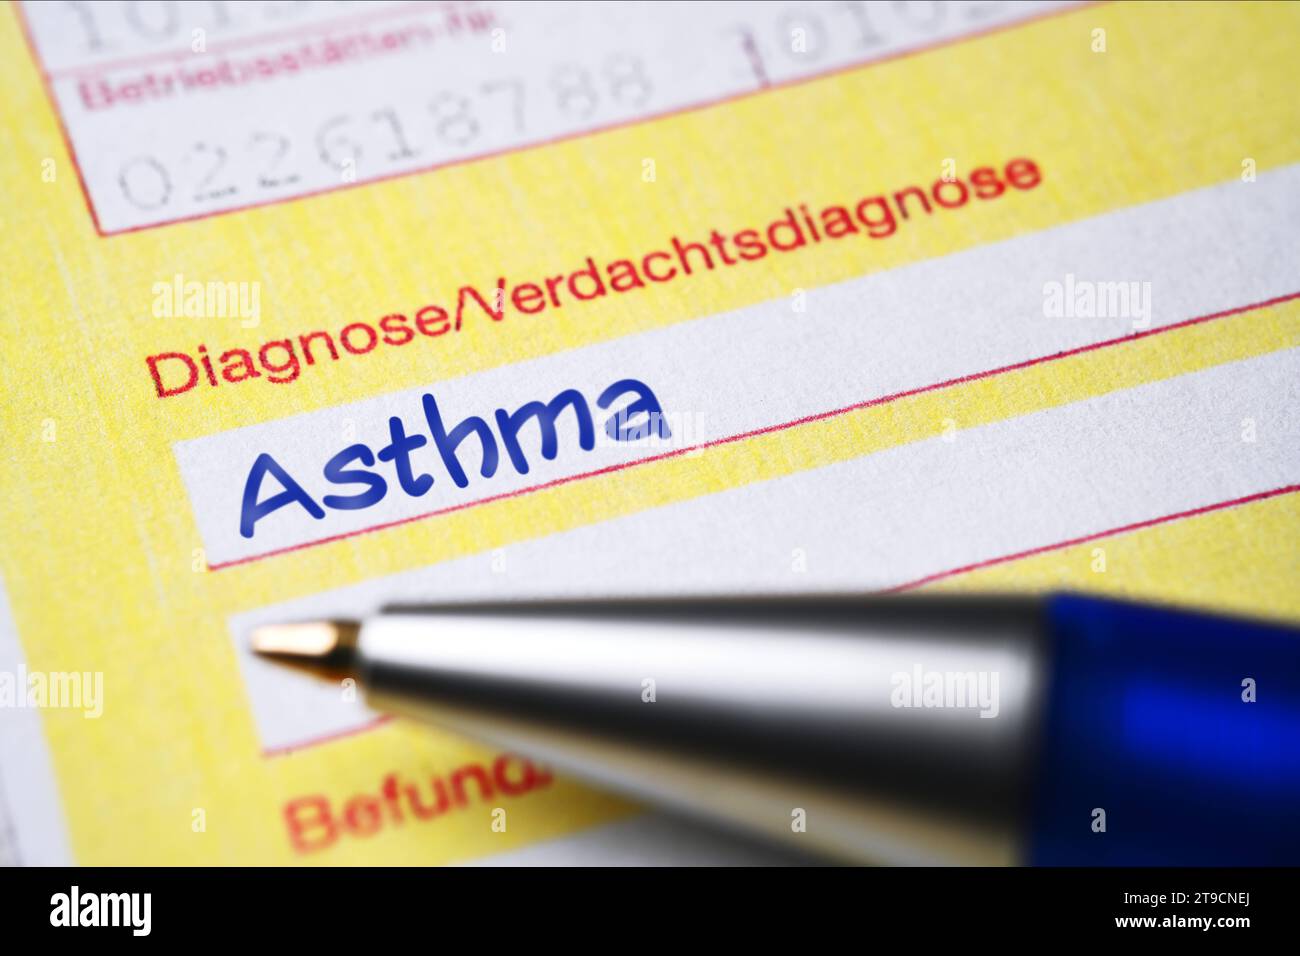 FOTOMONTAGE, Ärztlicher Überweisungsschein mit diagnosticare l'asma *** FOTOMONTAGGIO, modulo di riferimento medico con diagnosi di asma credito: Imago/Alamy Live News Foto Stock